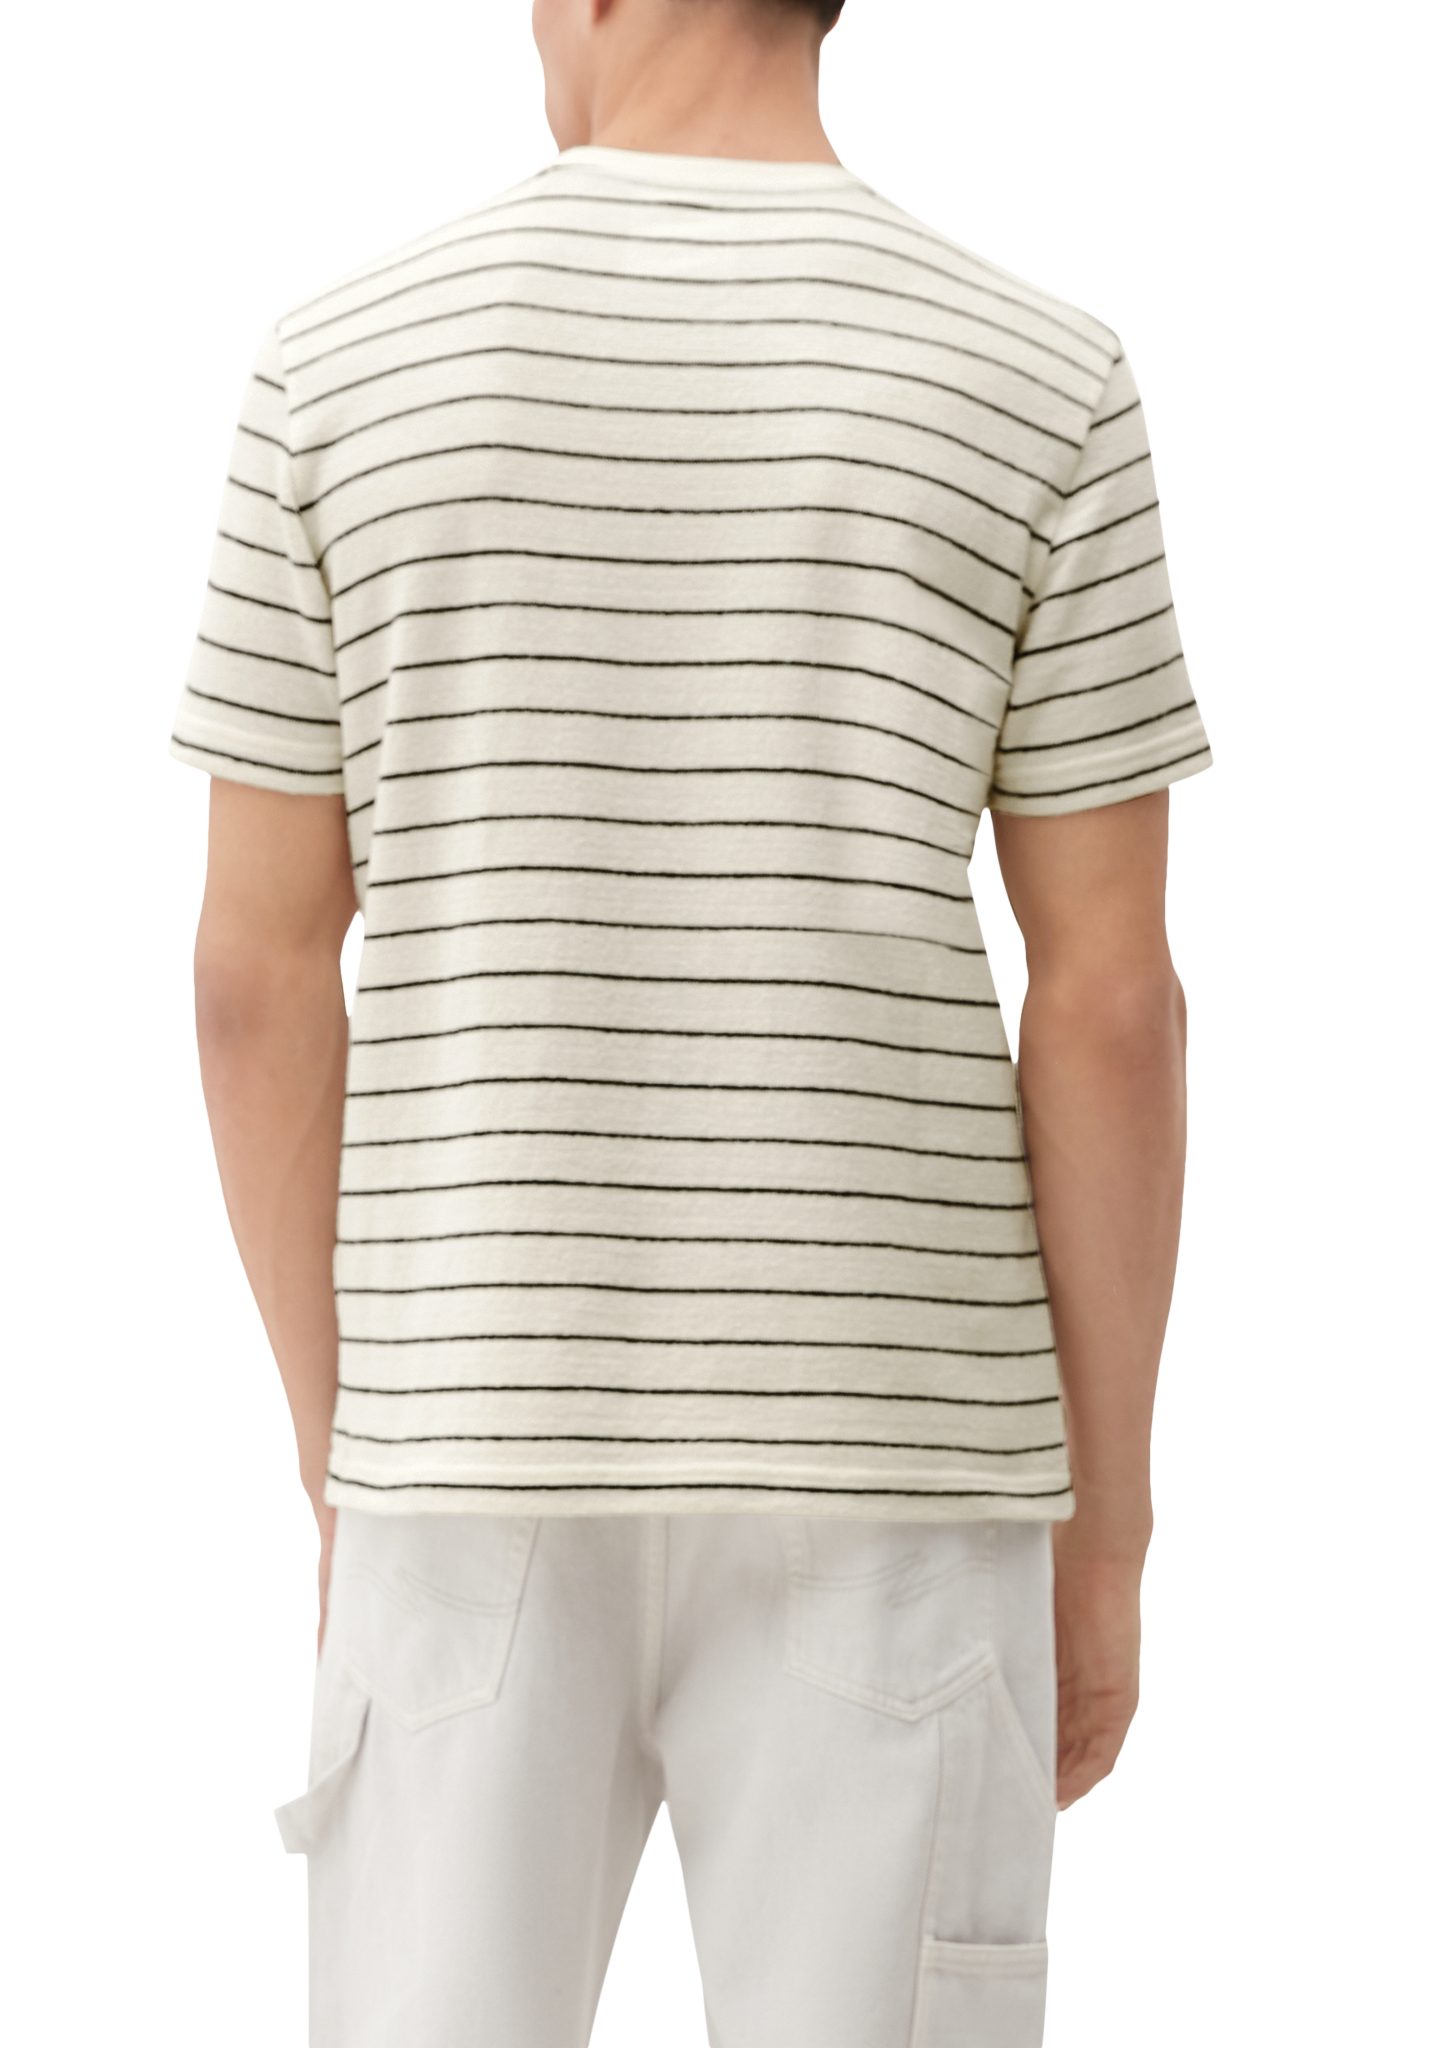 Baumwoll-Frottee beige Label-Patch aus QS helles Kurzarmshirt T-Shirt